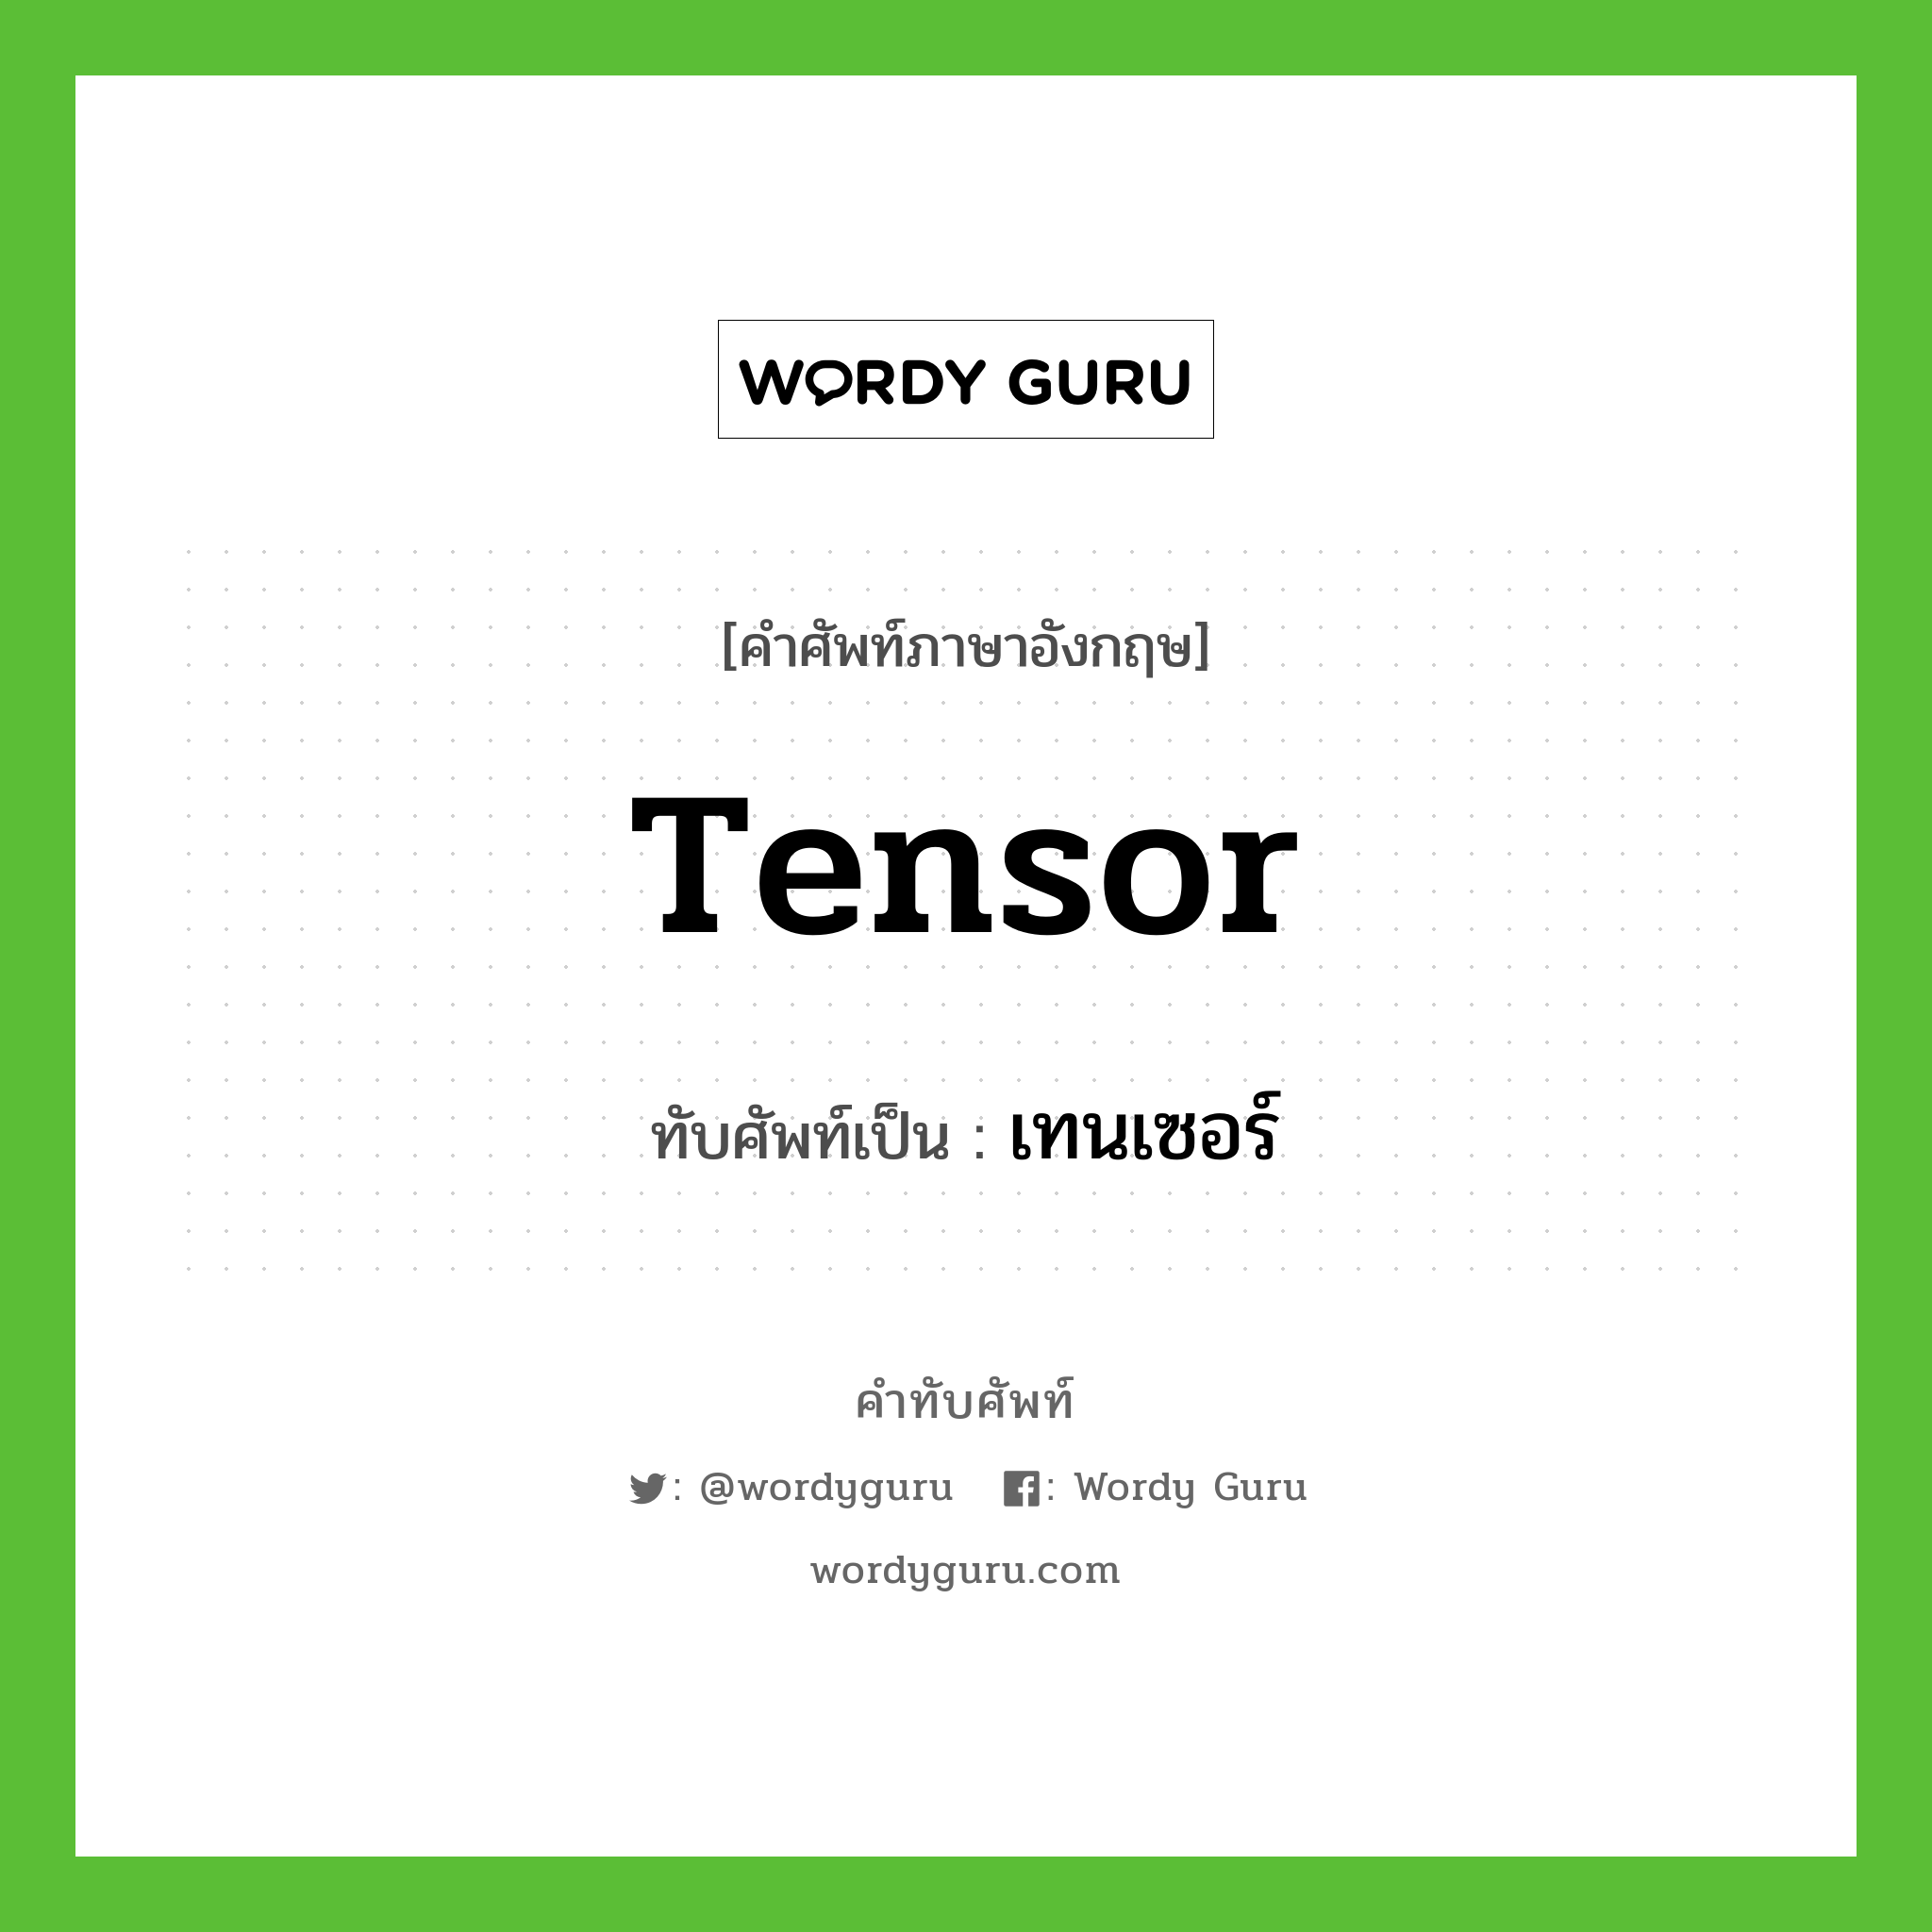 tensor เขียนเป็นคำไทยว่าอะไร?, คำศัพท์ภาษาอังกฤษ tensor ทับศัพท์เป็น เทนเซอร์